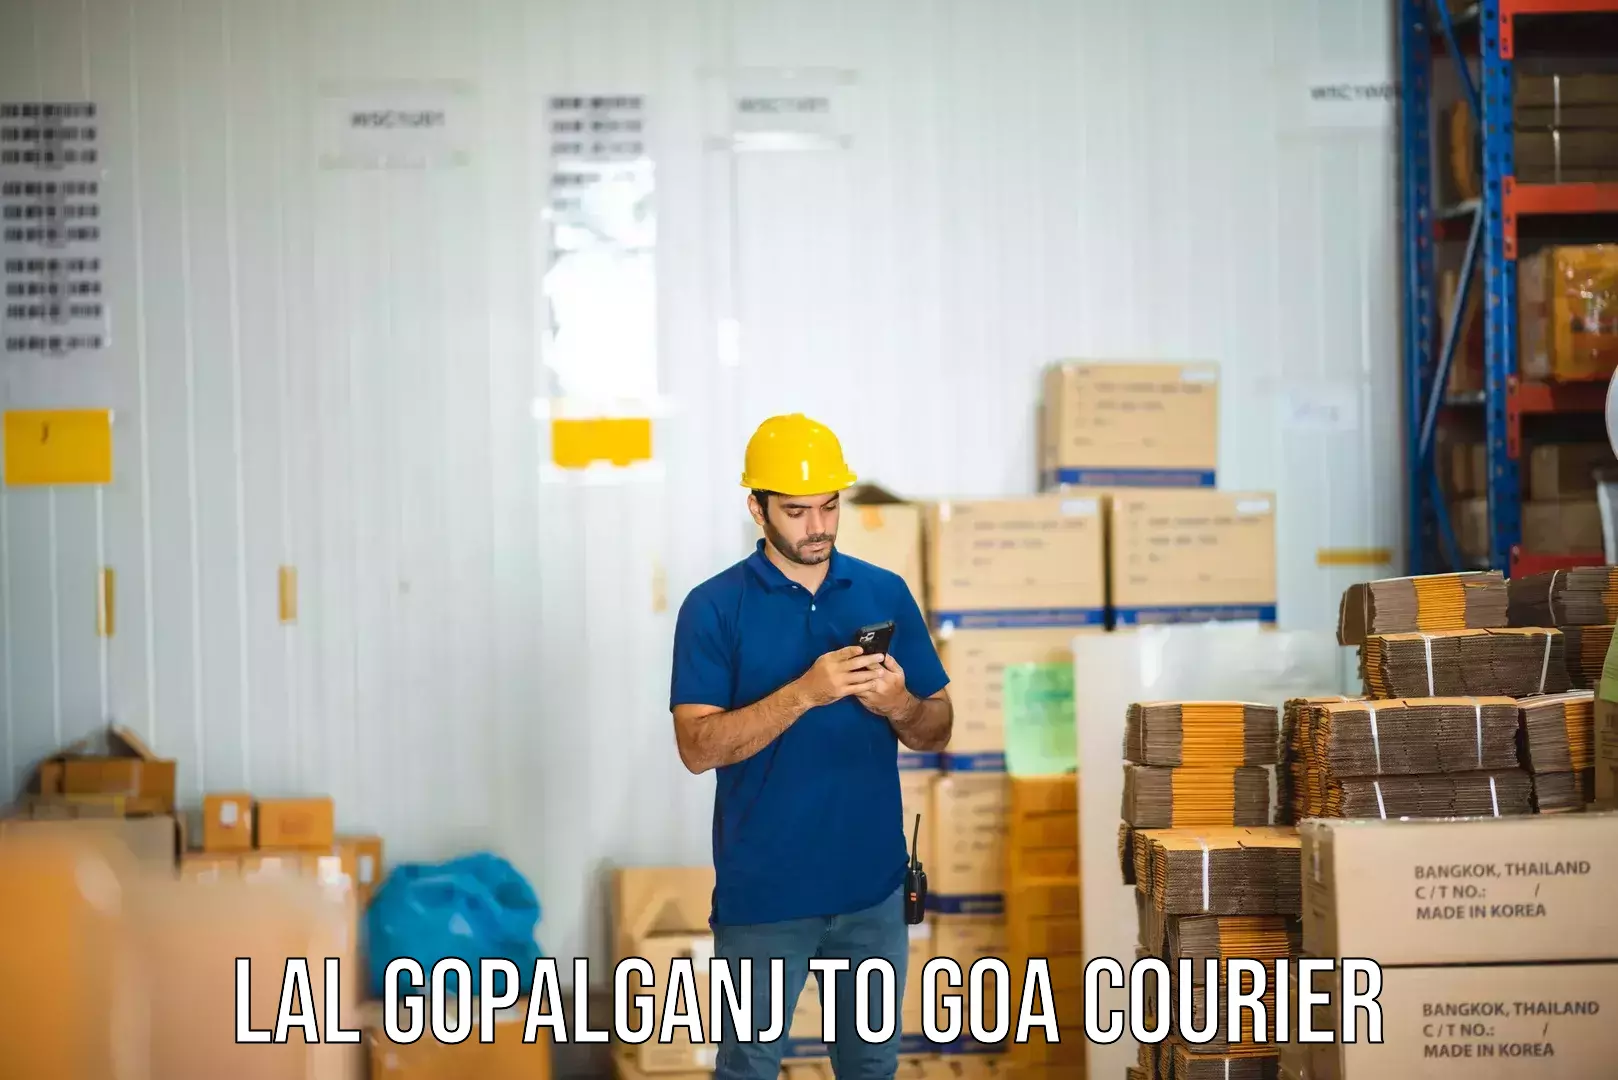 Express courier capabilities Lal Gopalganj to Panaji